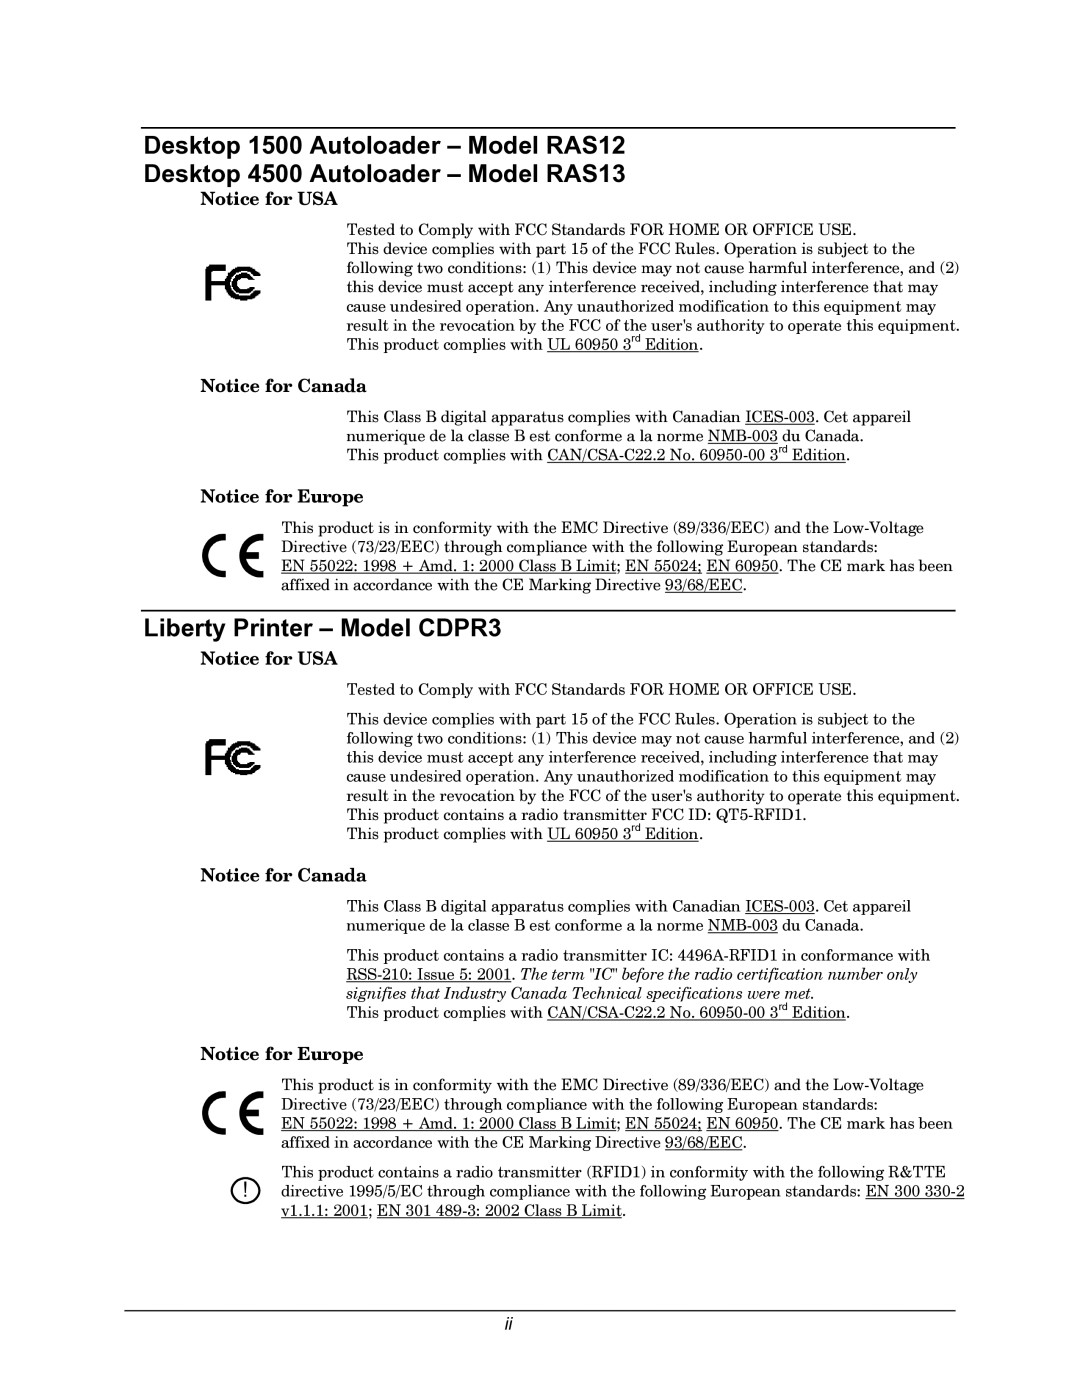 Rimage 110716-000 manual Liberty Printer Model CDPR3 